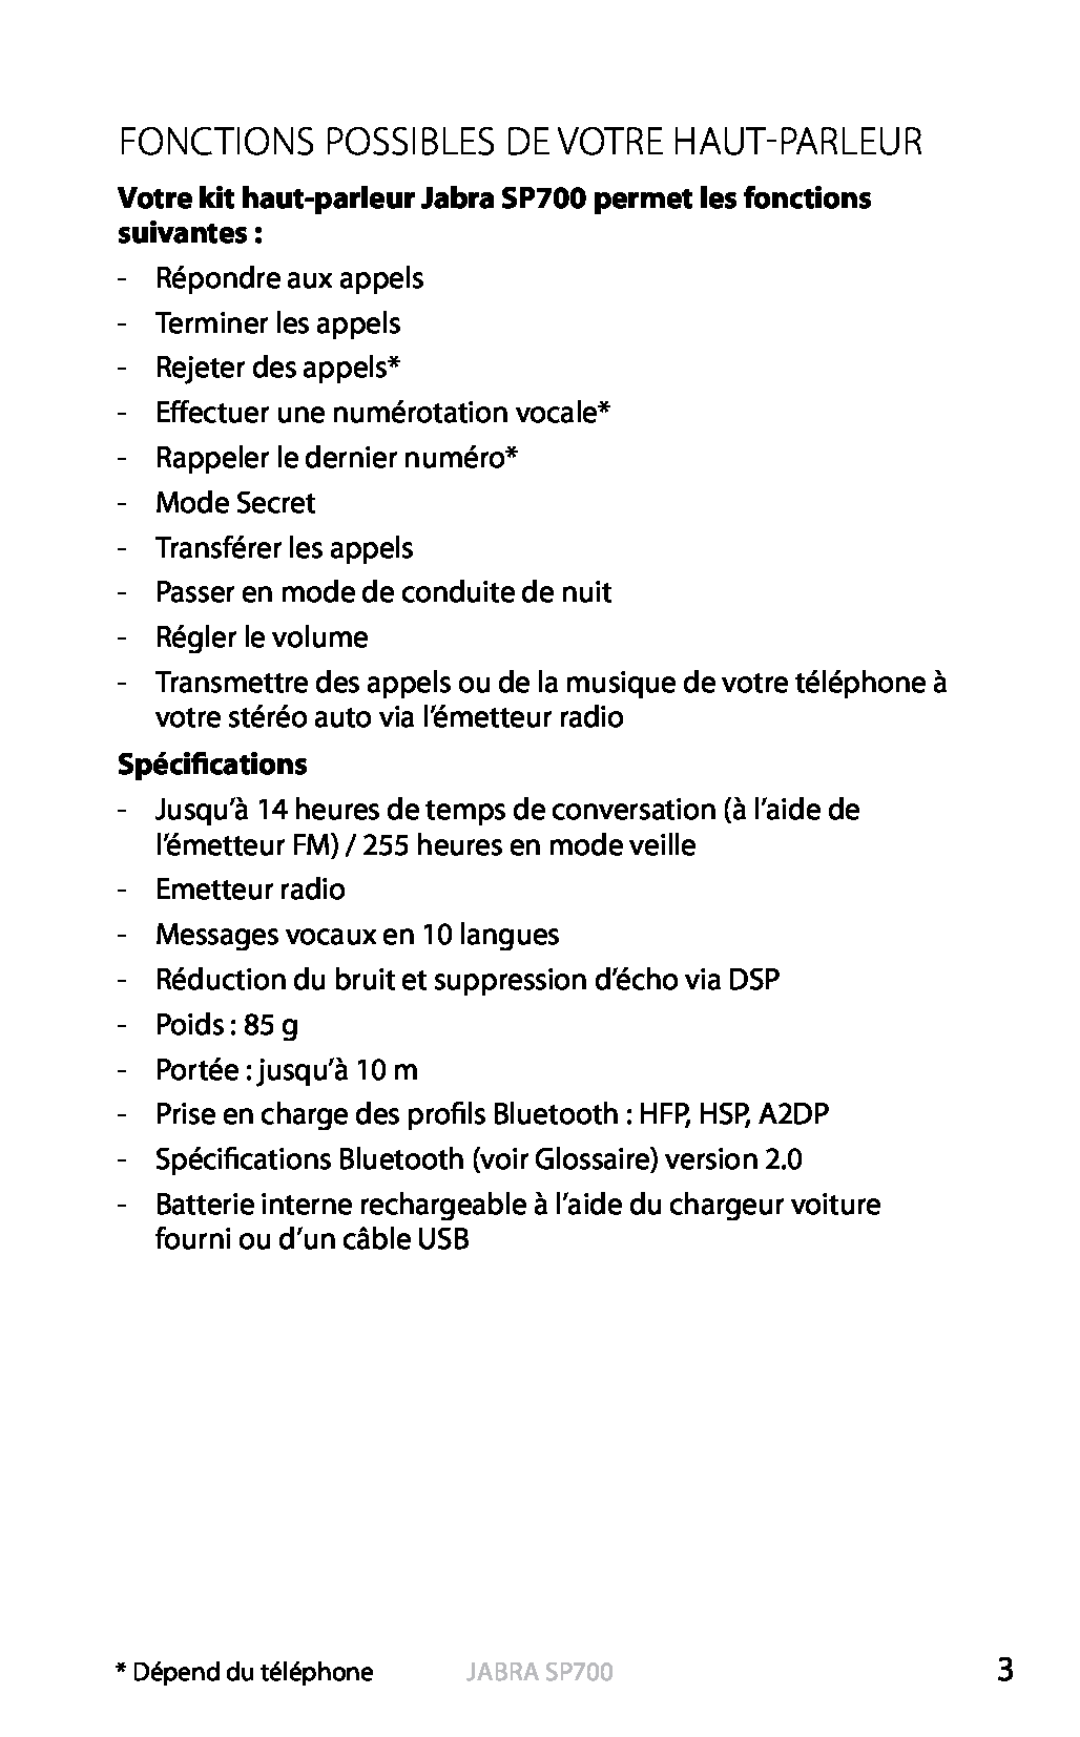 Jabra SP700 user manual Fonctions Possibles De Votre Haut-Parleur, Spécifications, Français 